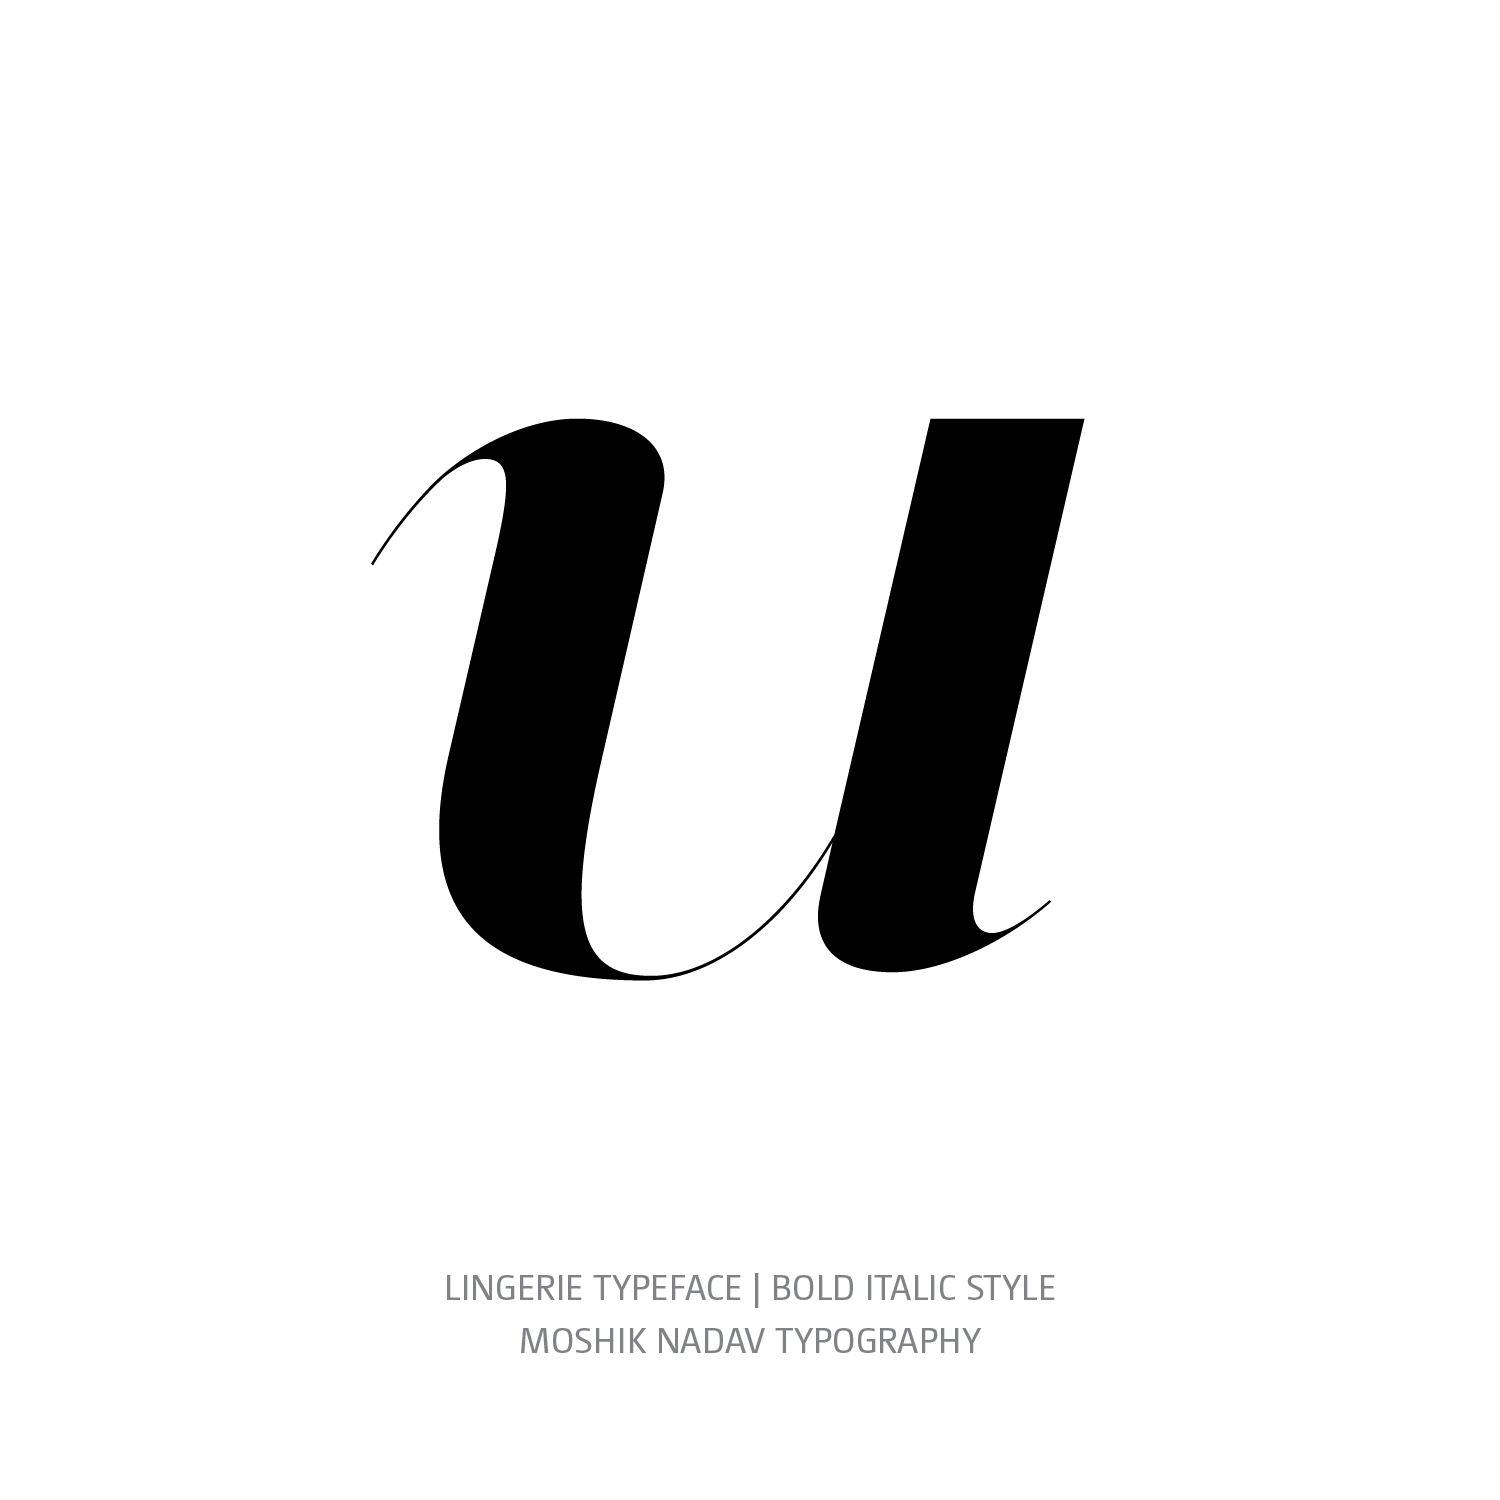 Lingerie Typeface Bold Italic u